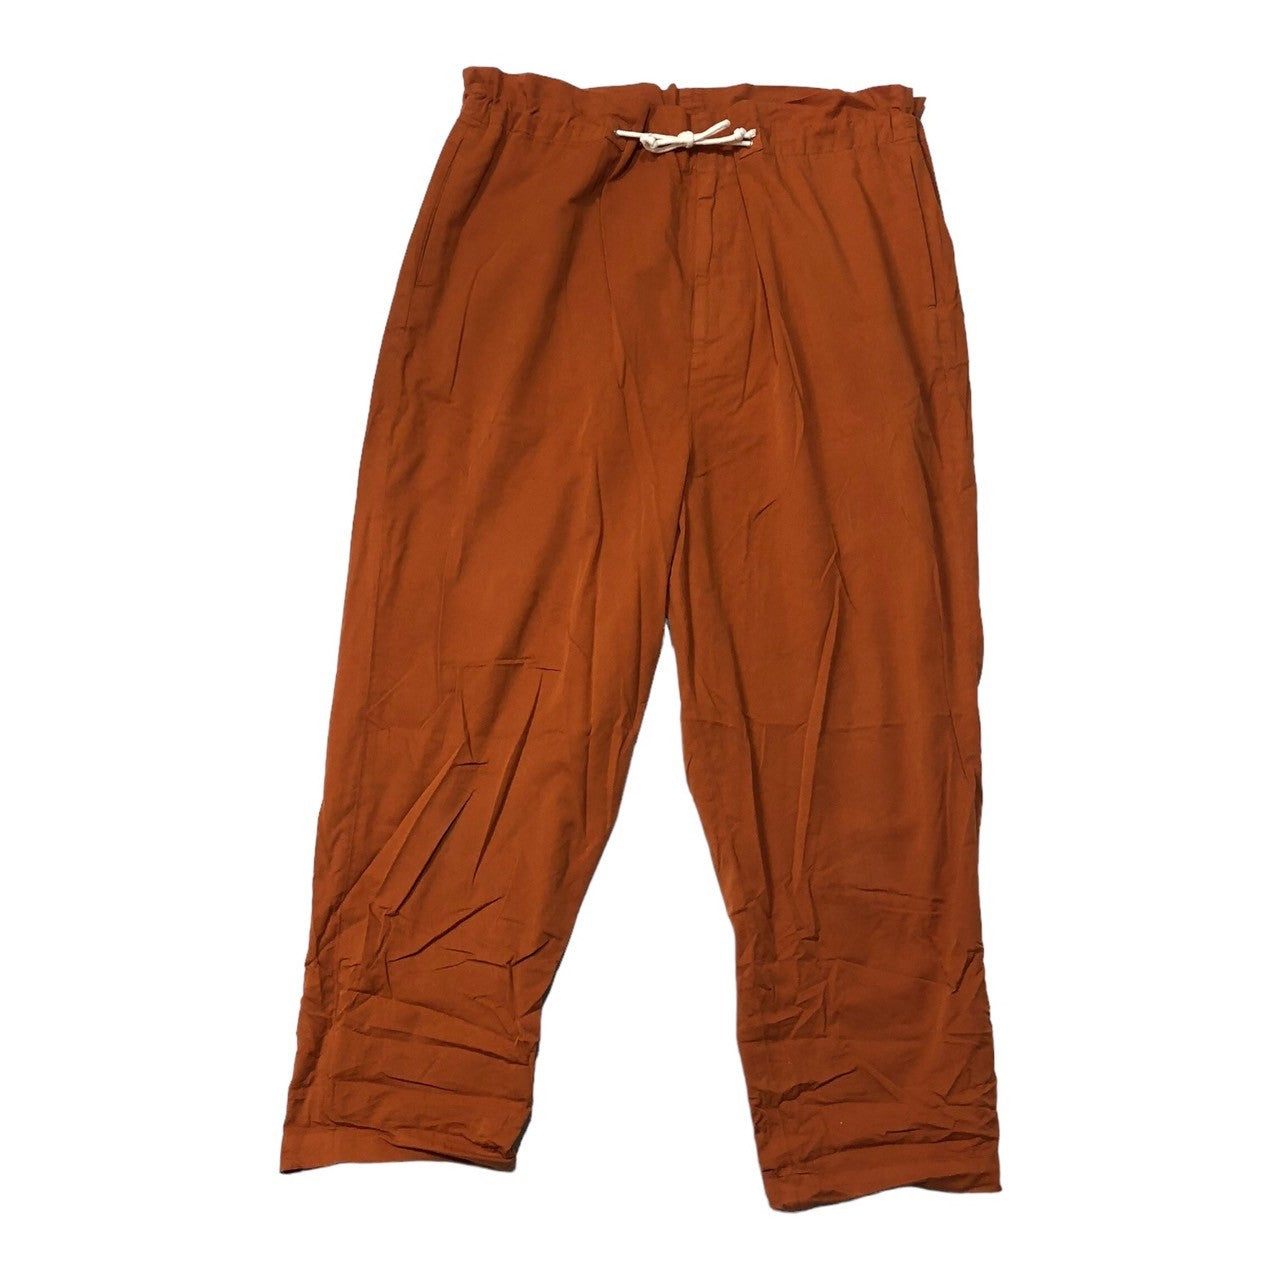 Dulcamara(ドゥルカマラ) Cotton poly product dyed wide easy pants コットンポリ 製品染め ワイド イージーパンツ SIZE 1(S) オレンジ